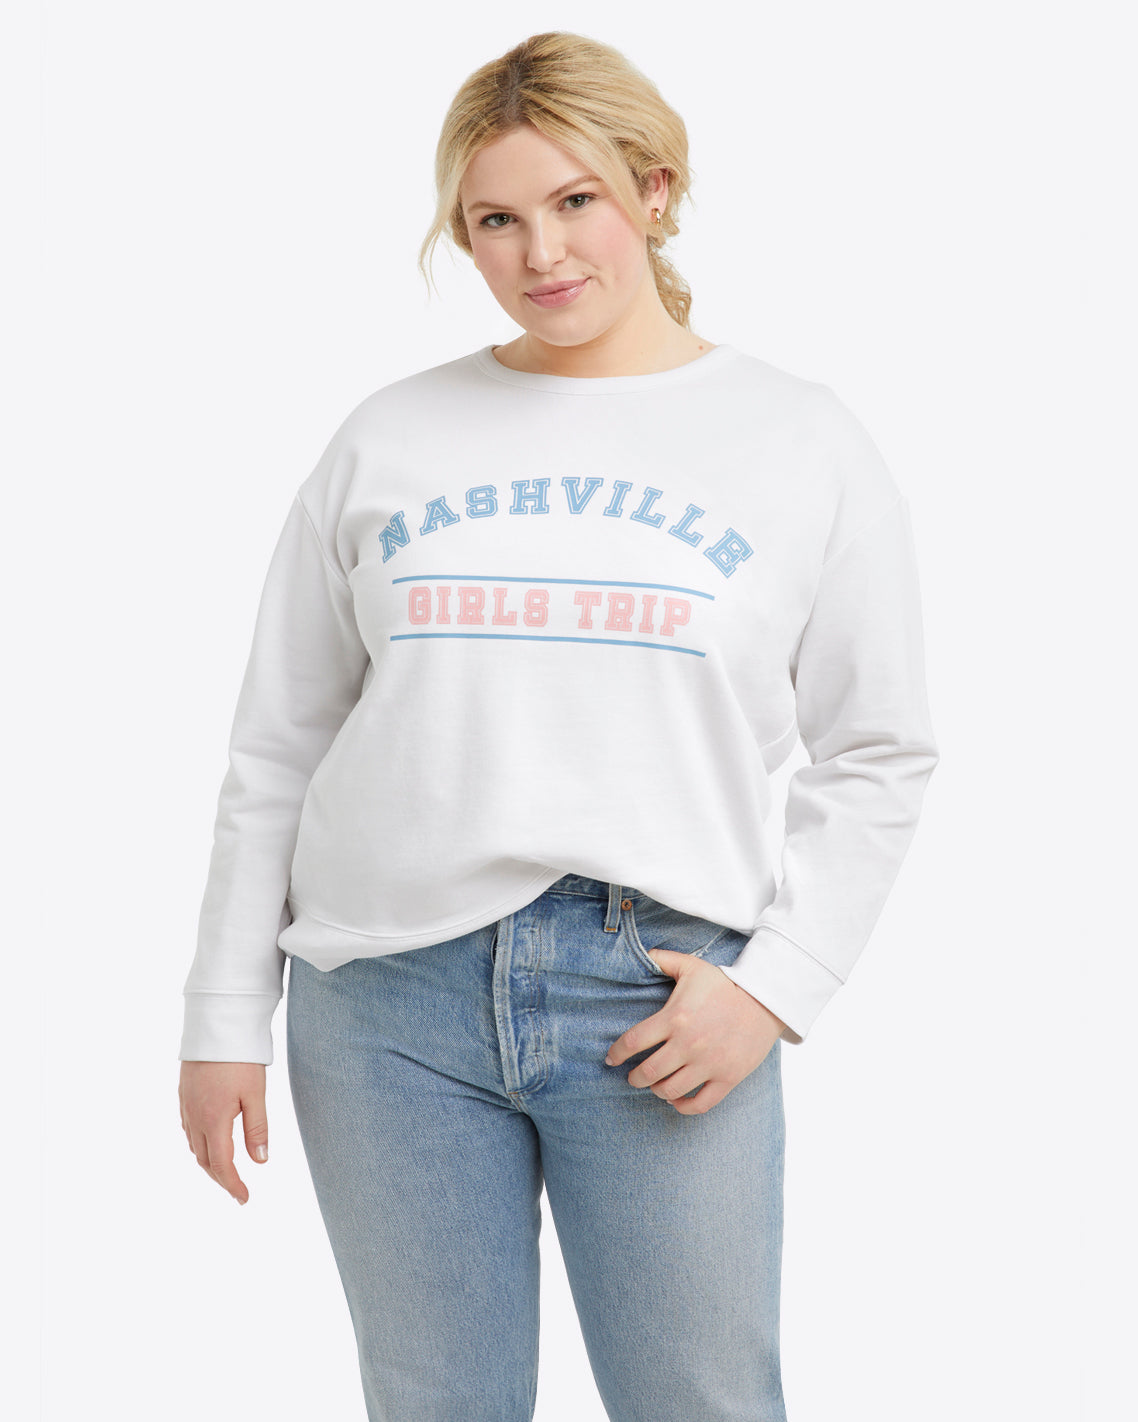 Nashville Girls Trip Sweatshirt